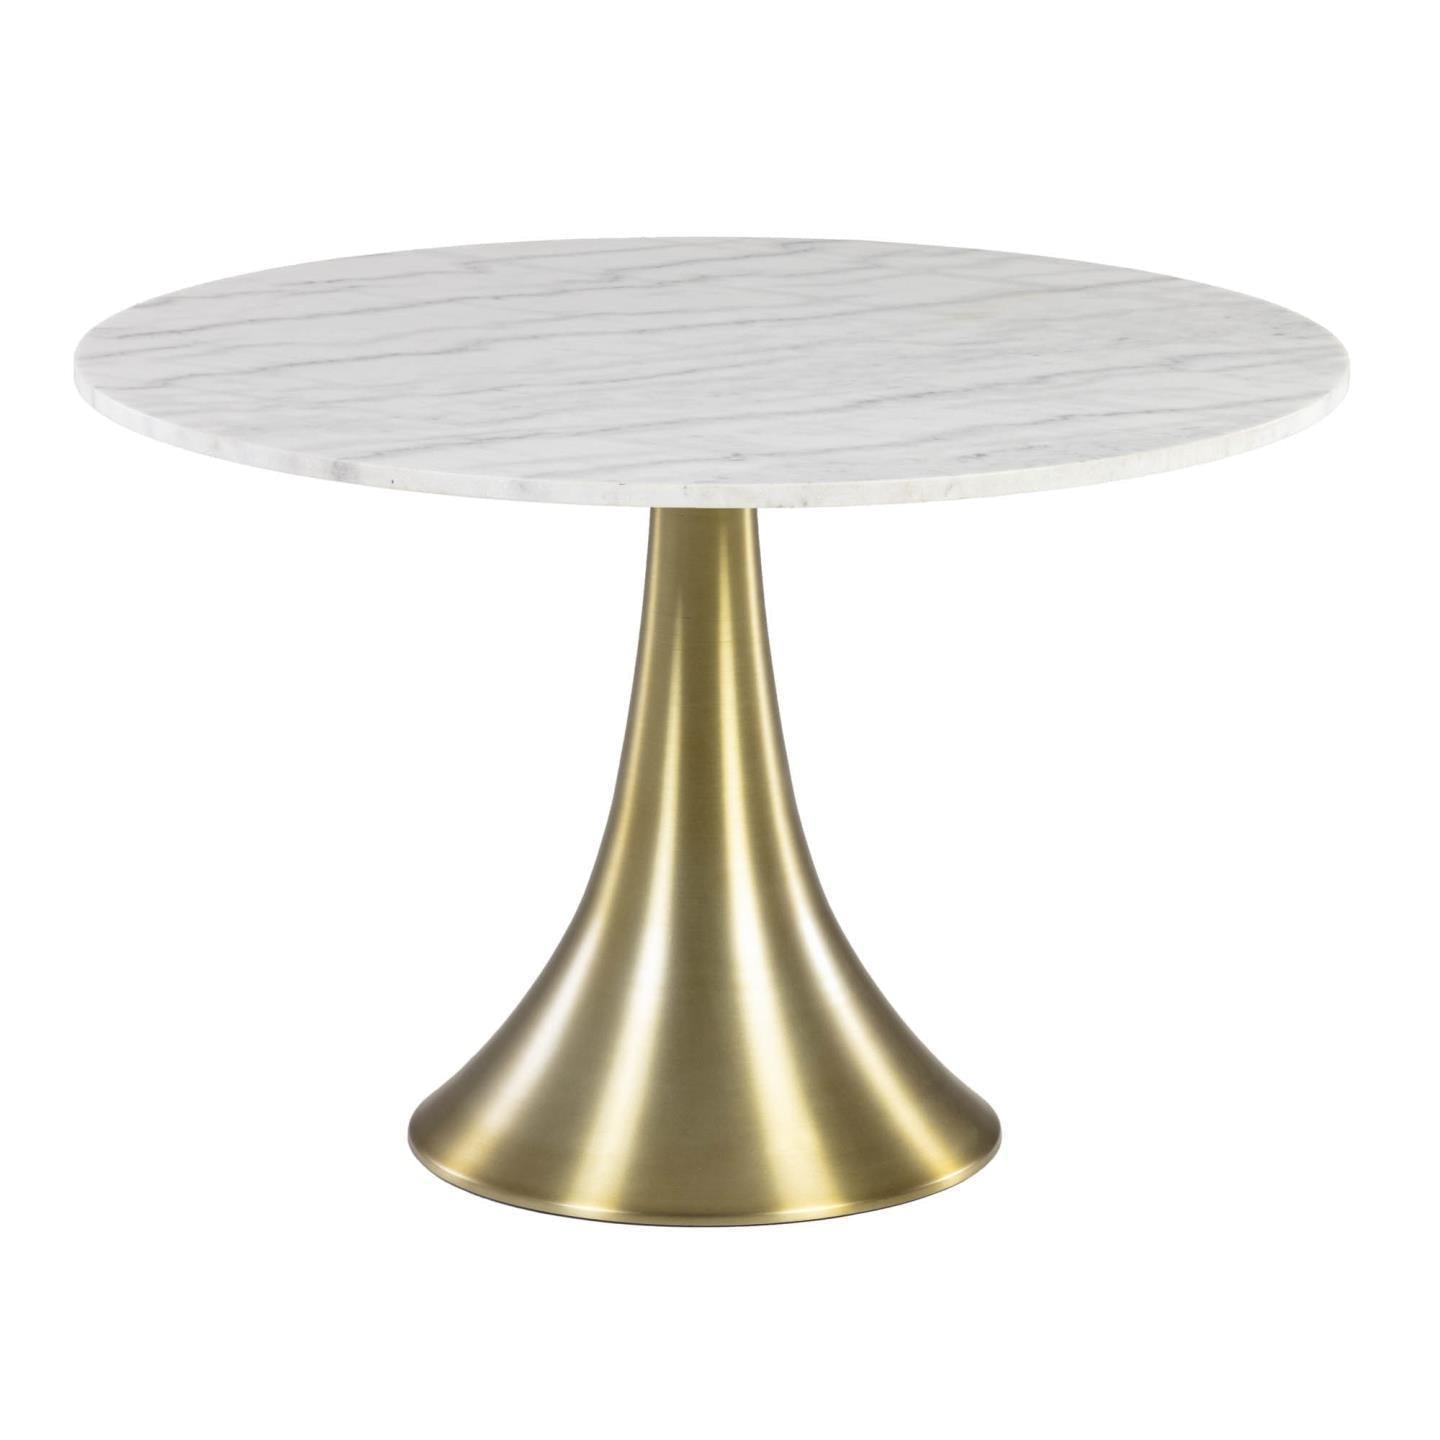 Kave Home Oria runder Tisch aus weißem Marmor und goldenen Stahlbeinen Ø 120 cm Gold-CC1841PR05 #CC1841PR05